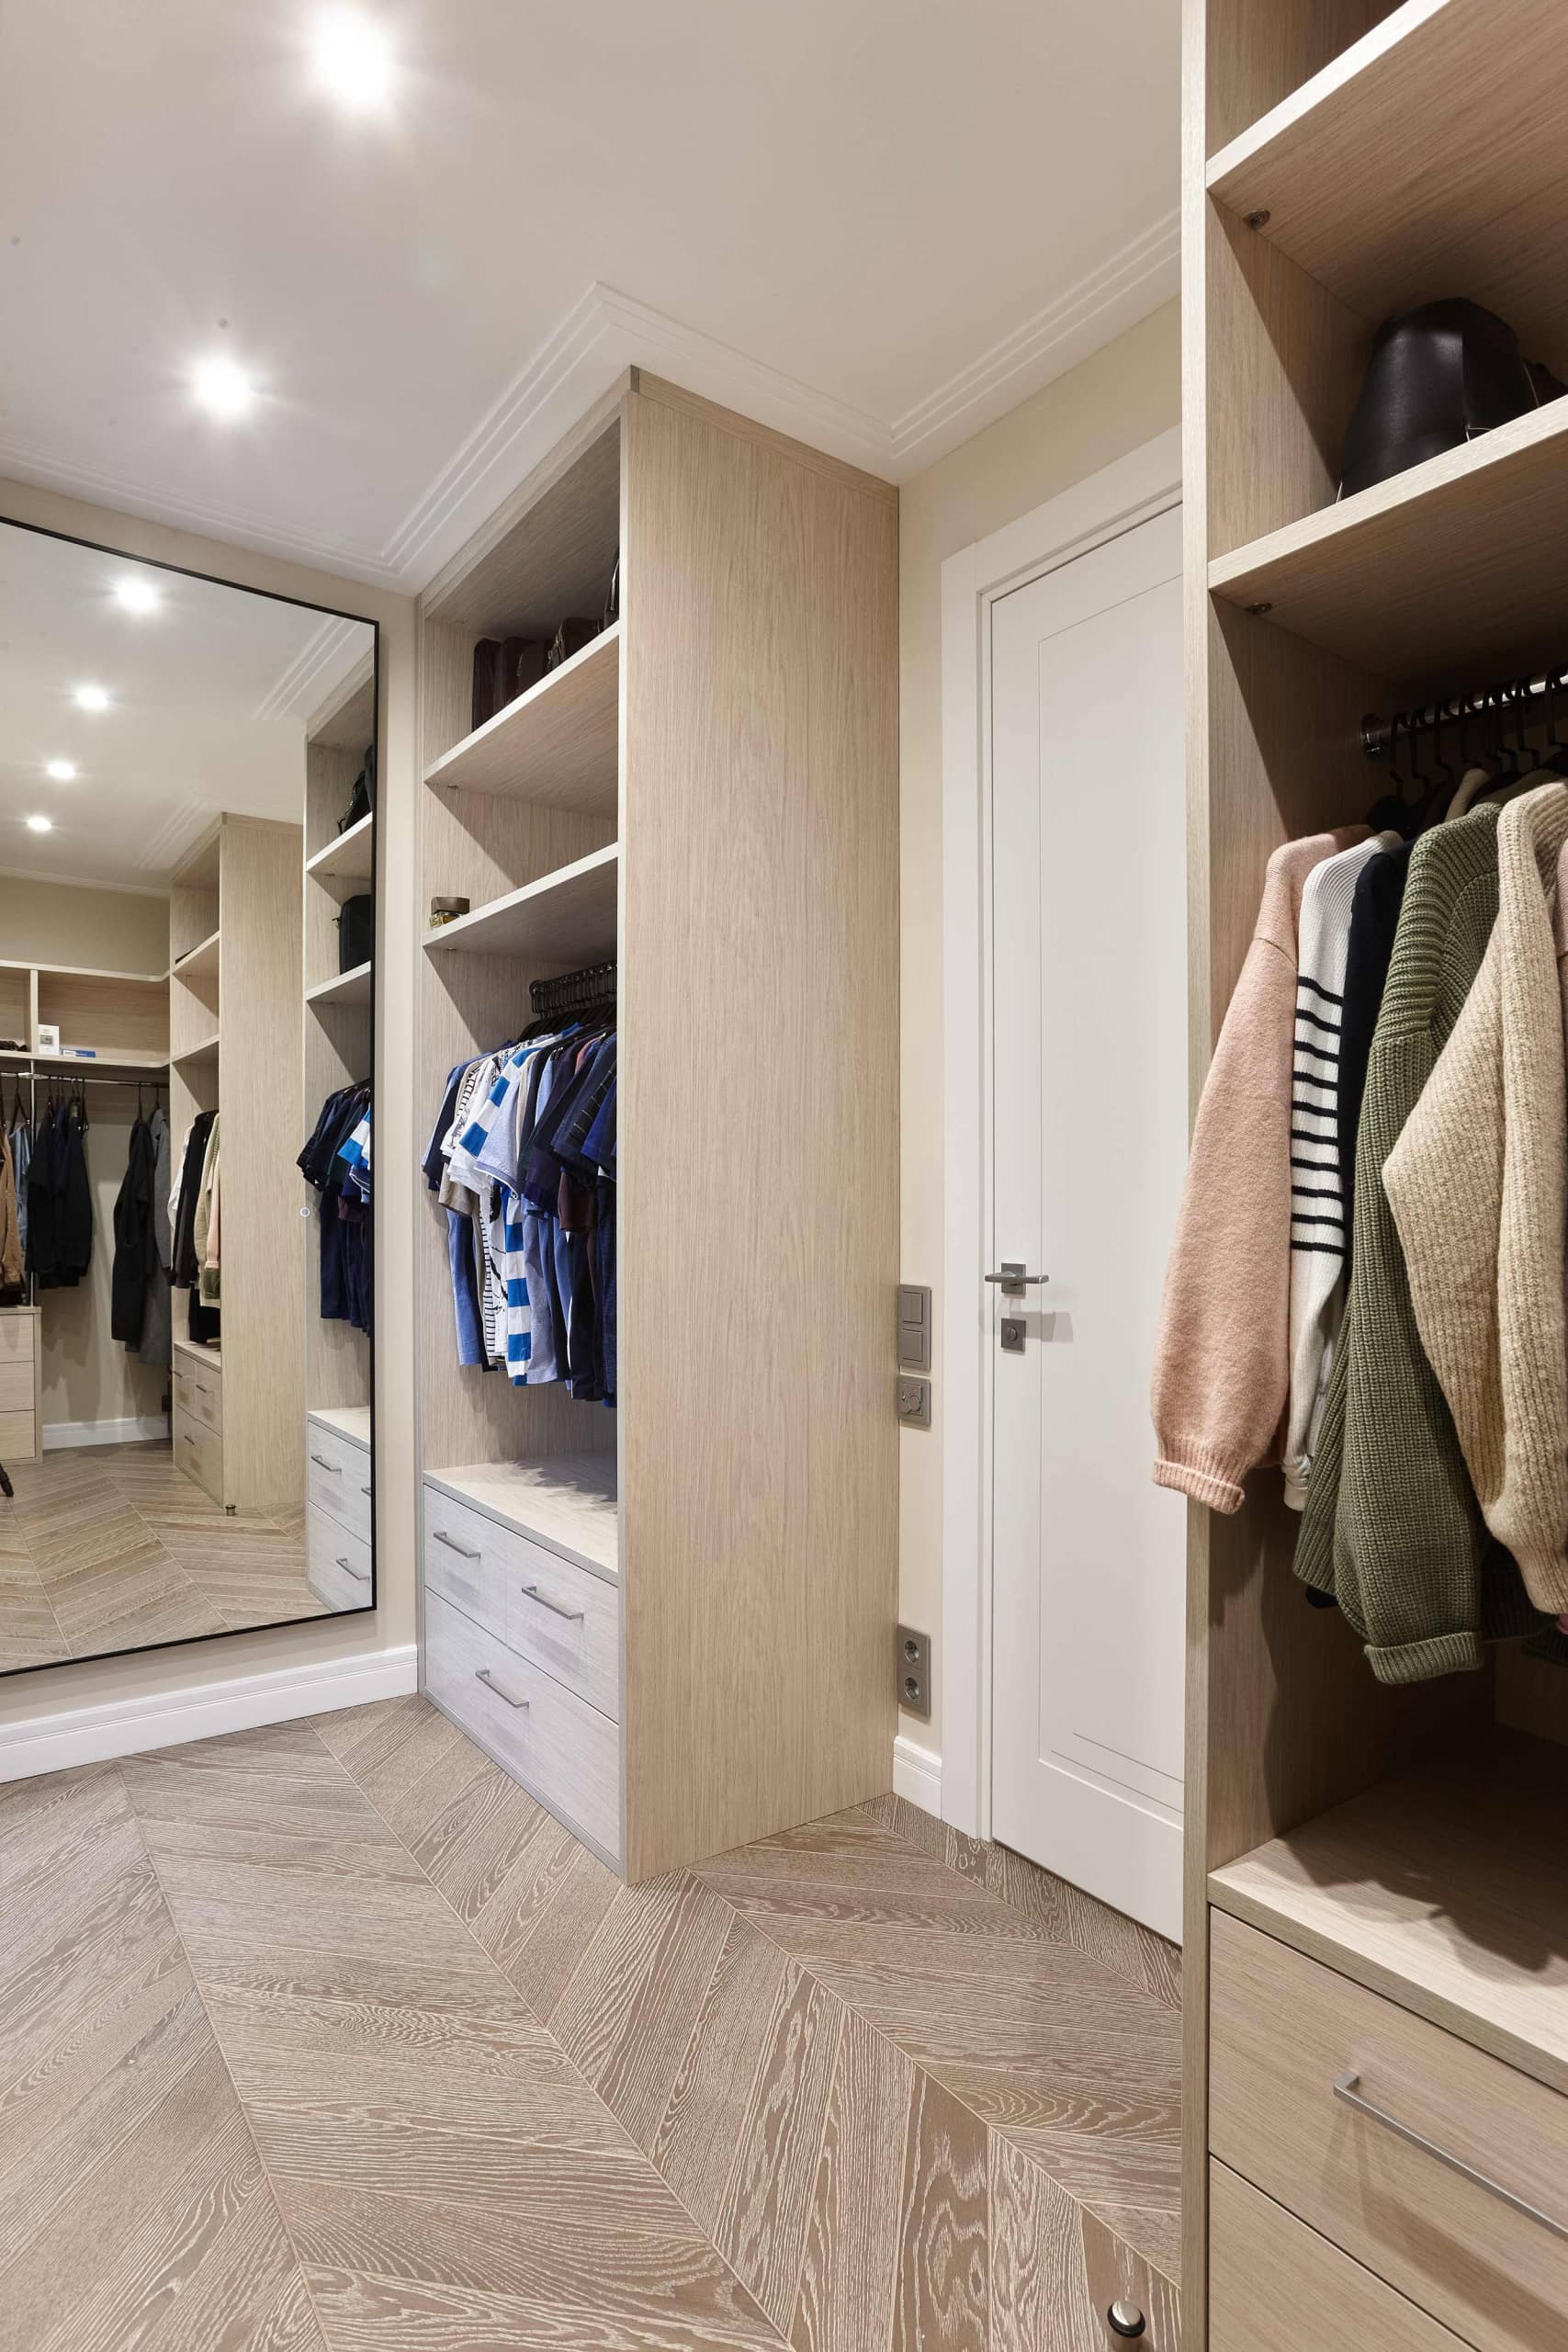 Шкафы для хранения одежды дополнили зеркалом